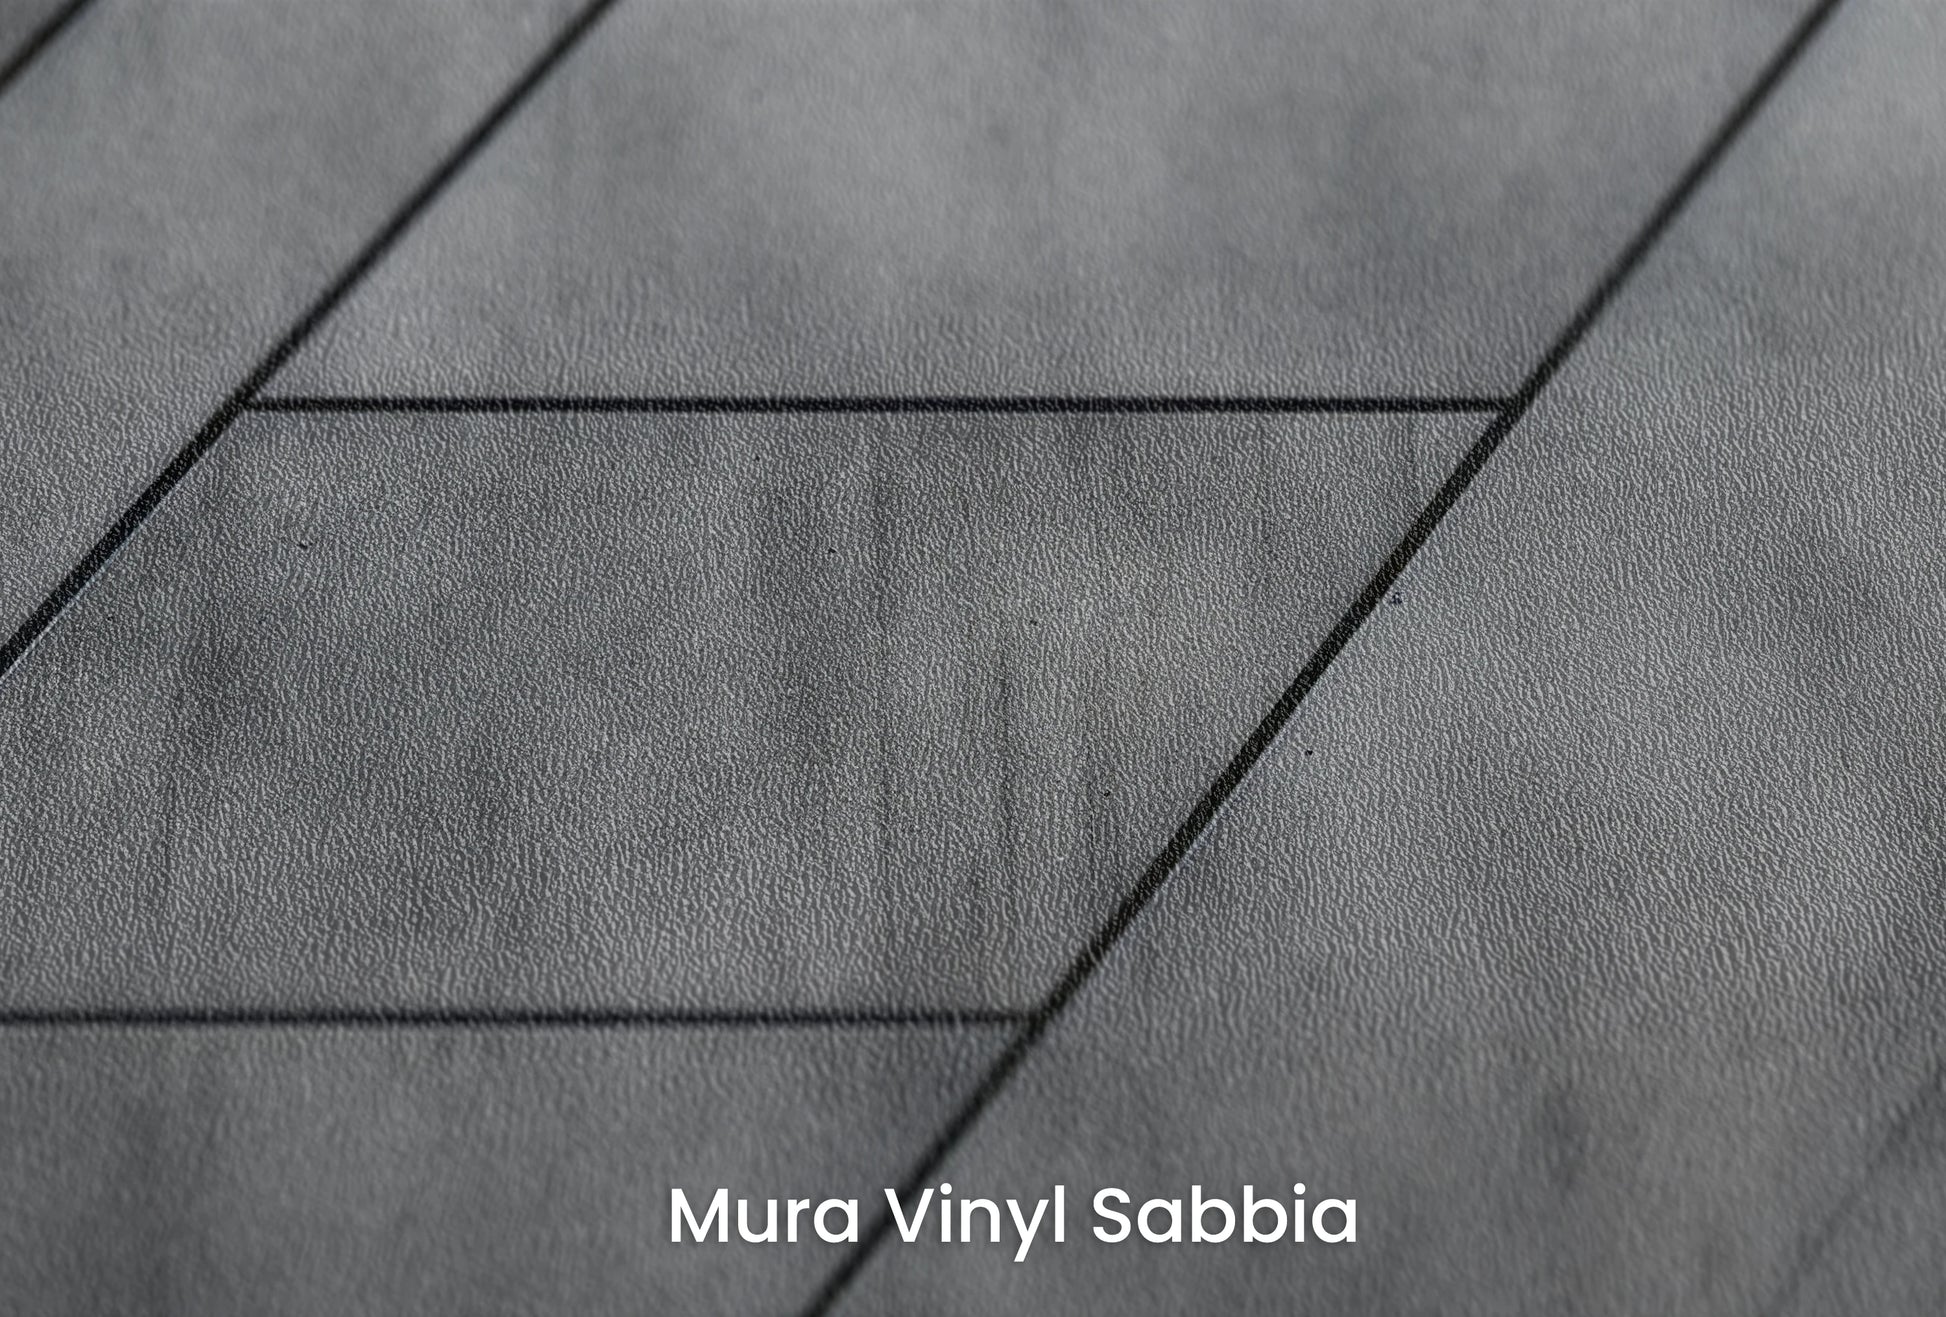 Zbliżenie na artystyczną fototapetę o nazwie Linear Perspective na podłożu Mura Vinyl Sabbia struktura grubego ziarna piasku.